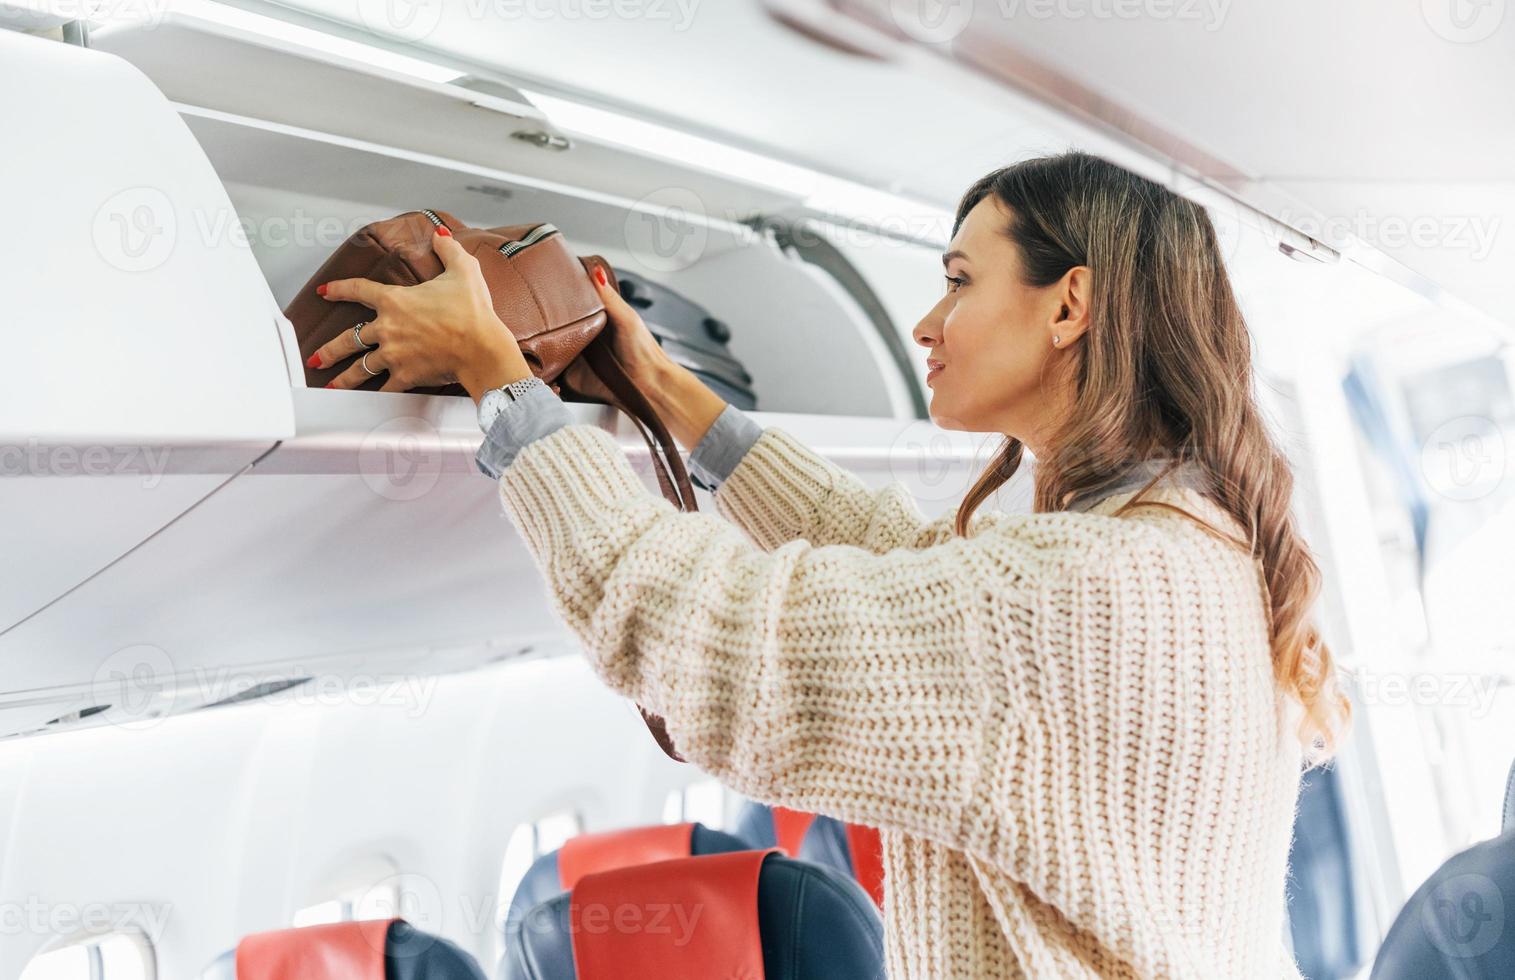 Gepäck halten. junge weibliche passagierin in lässiger kleidung ist im flugzeug foto